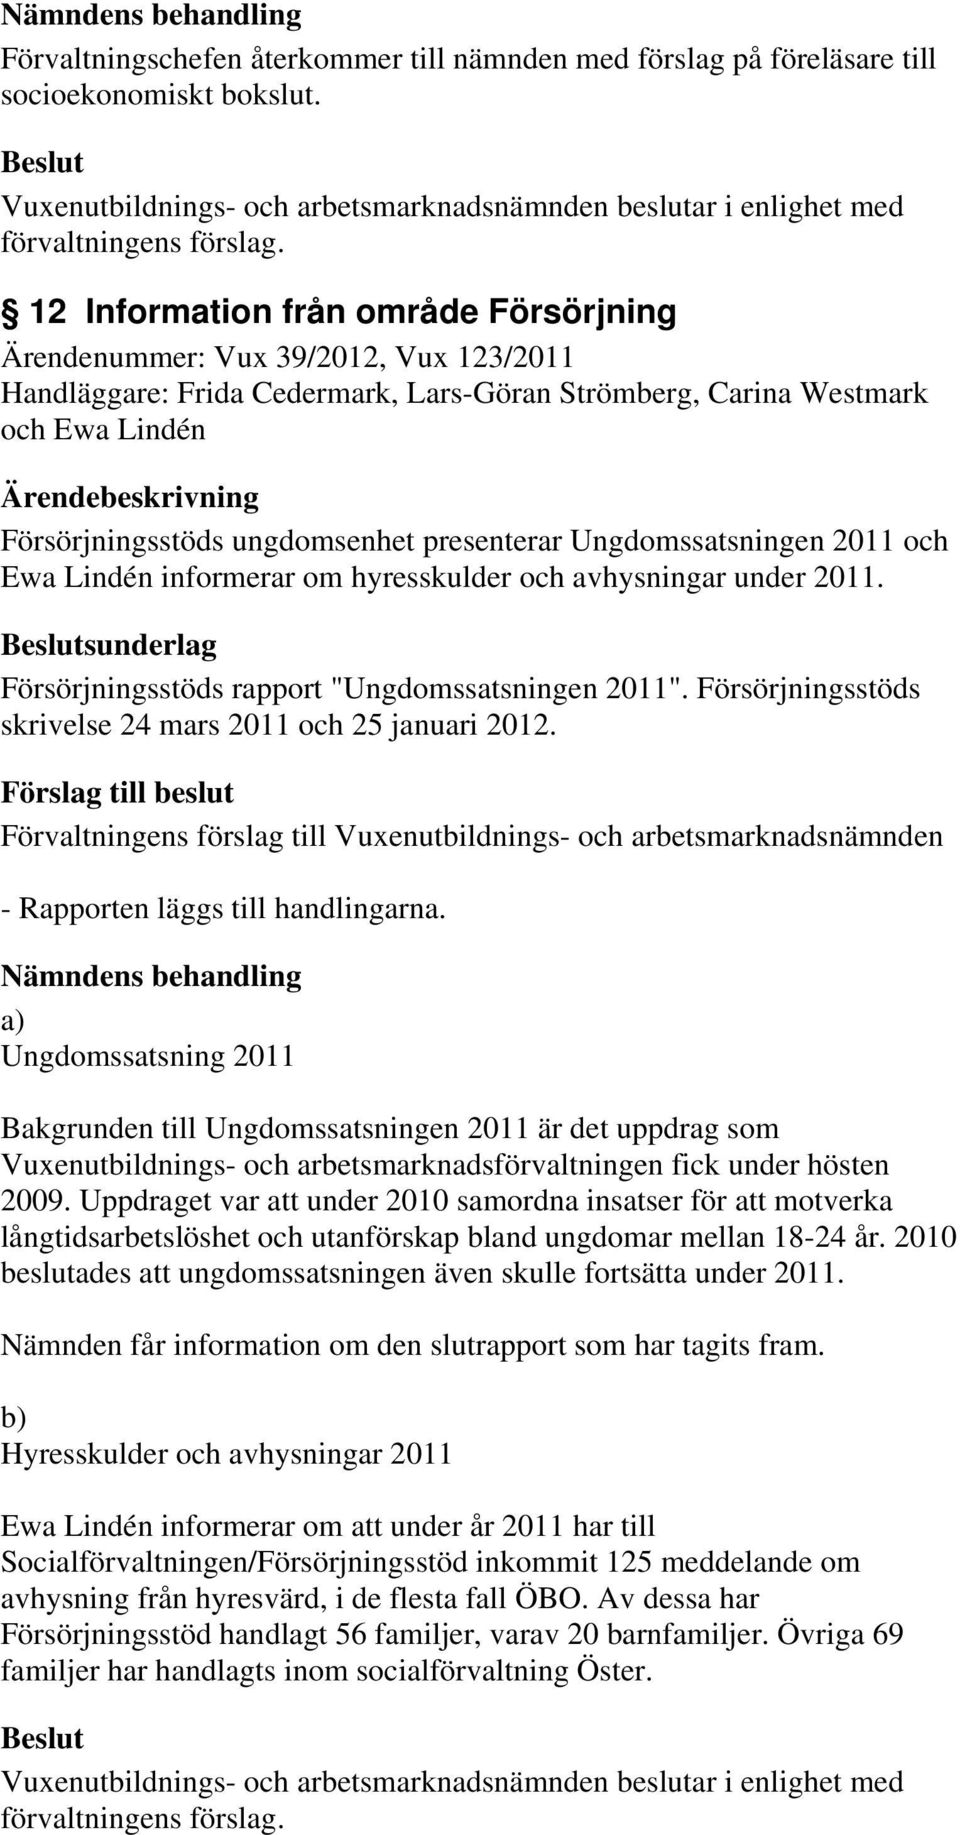 presenterar Ungdomssatsningen 2011 och Ewa Lindén informerar om hyresskulder och avhysningar under 2011. sunderlag Försörjningsstöds rapport "Ungdomssatsningen 2011".